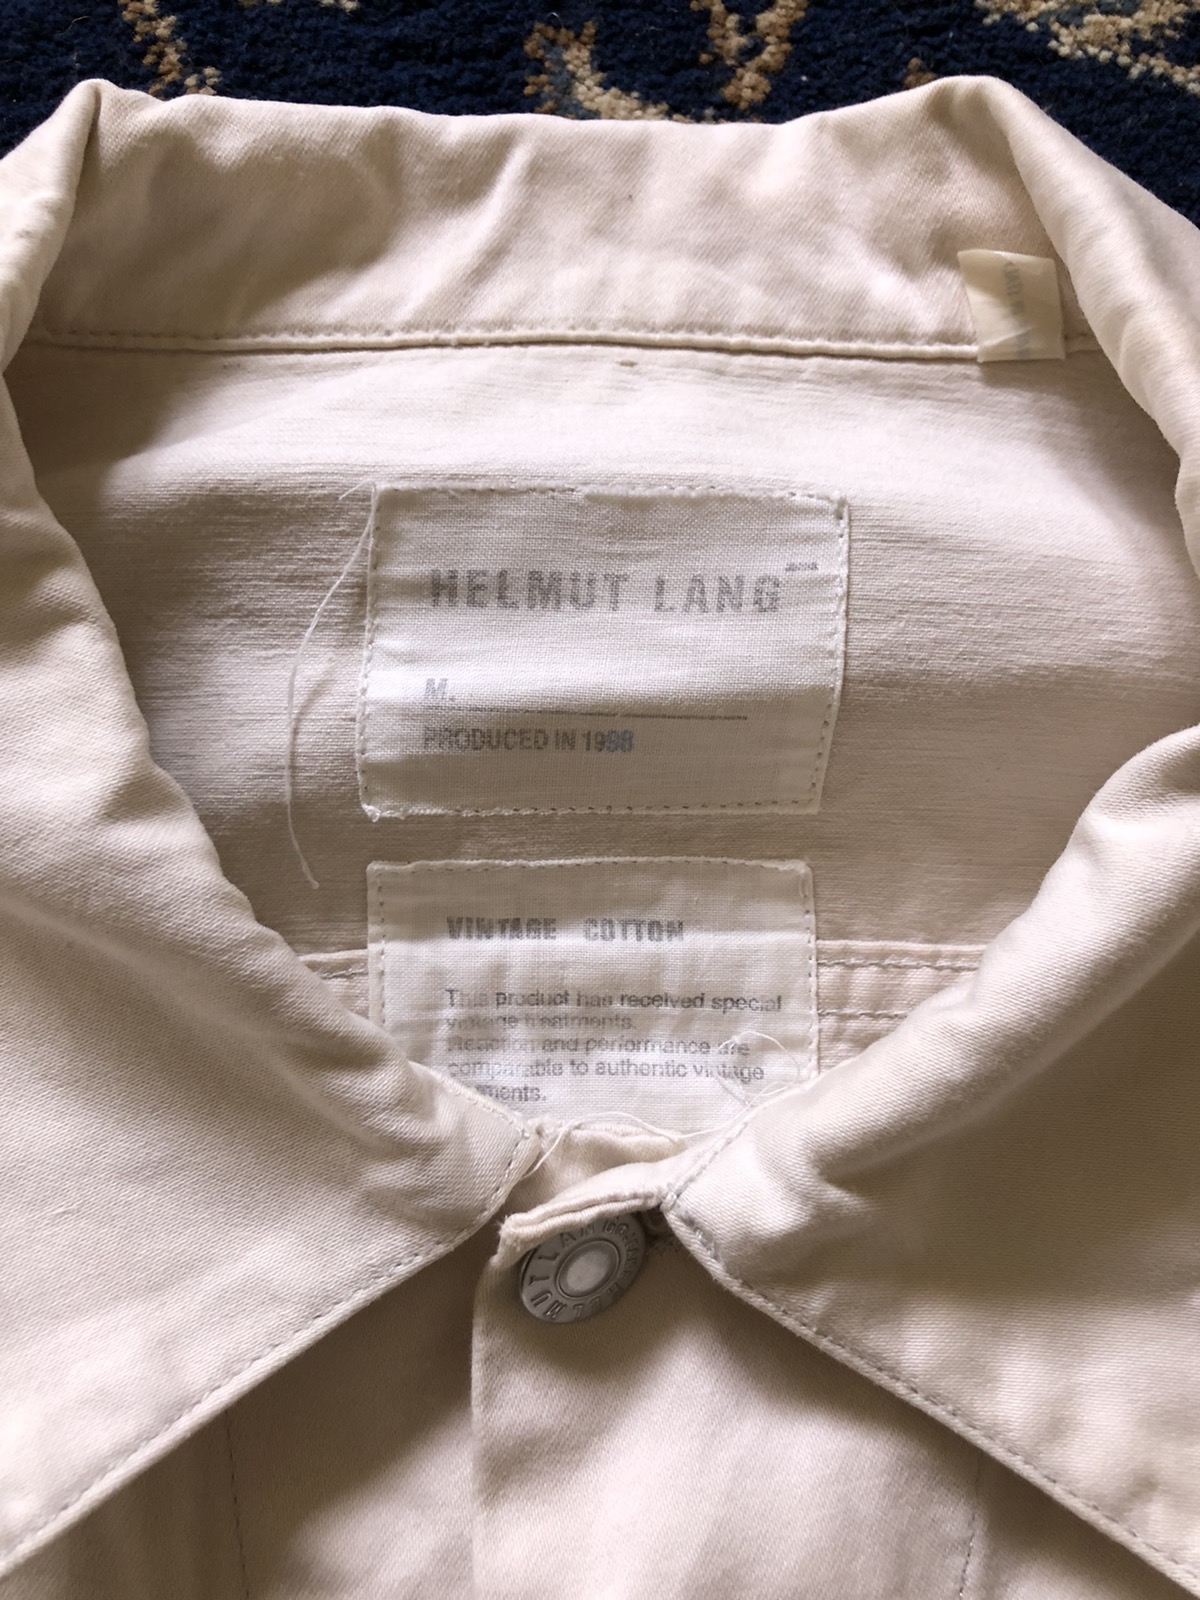 1998 Helmut Lang Off-white Vintage Cotton Jacket - 3